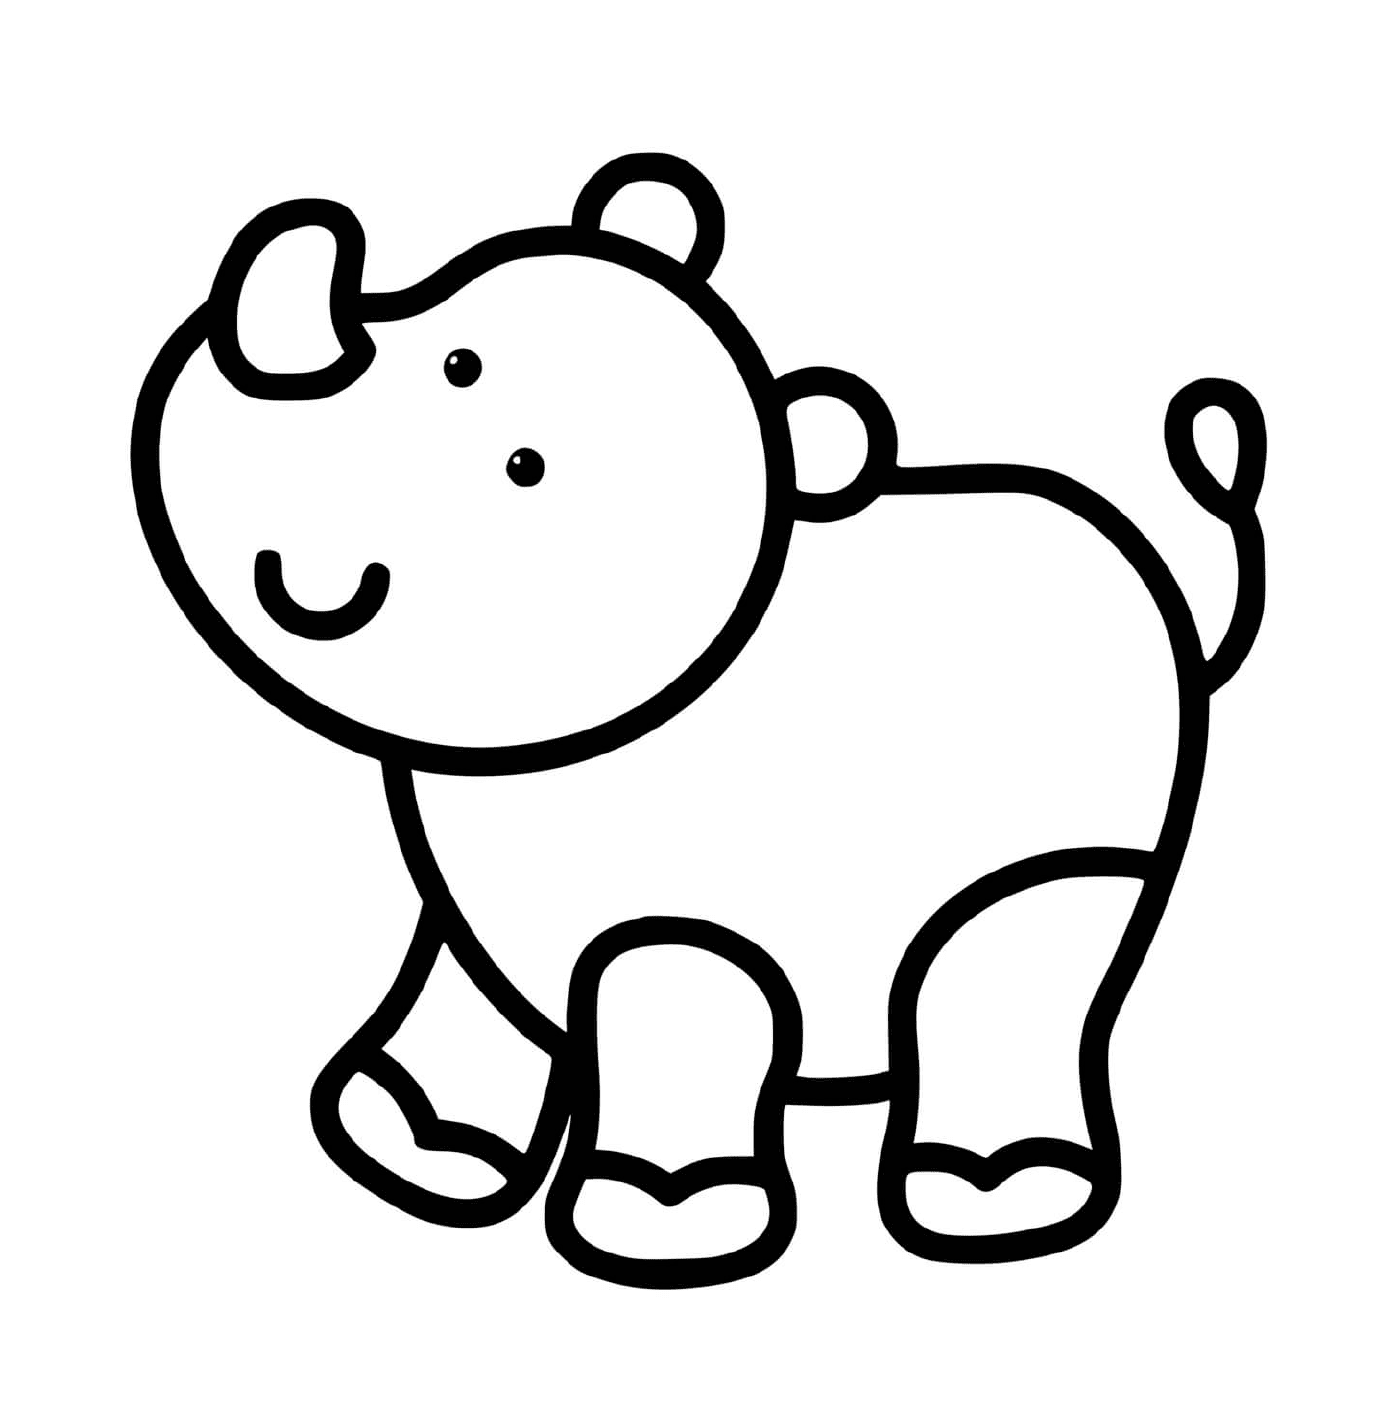  很容易为两岁的孩子画犀牛 